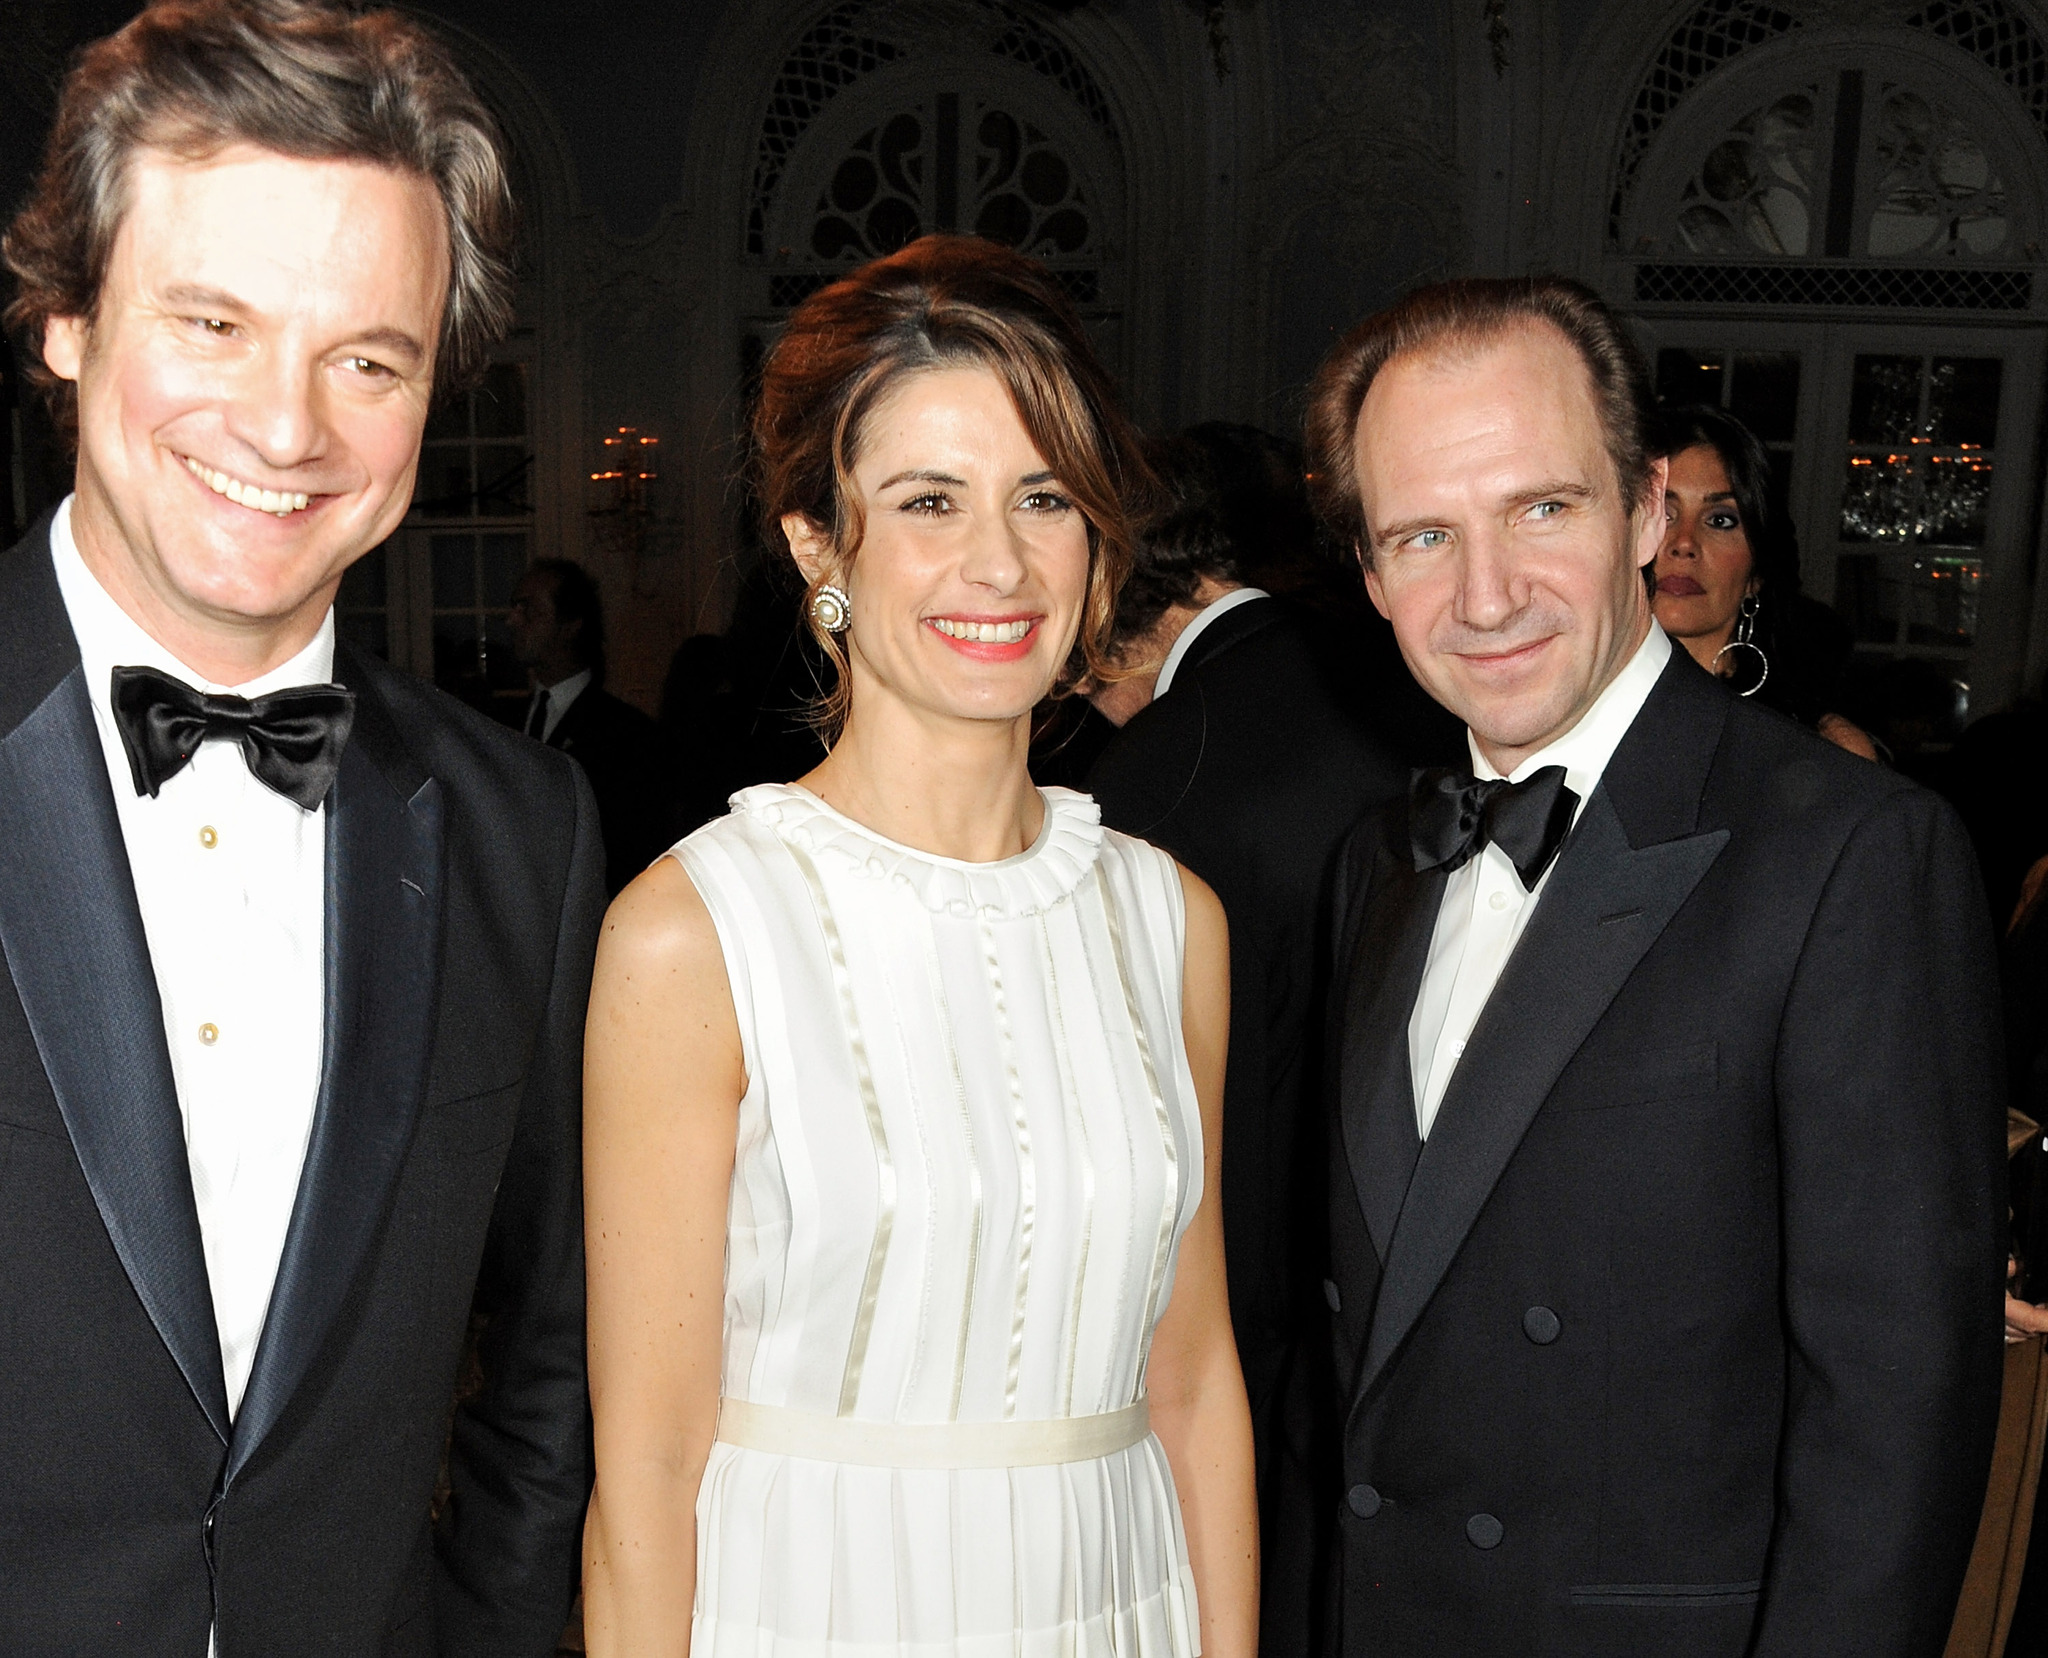 Ralph Fiennes, Colin Firth and Livia Giuggioli